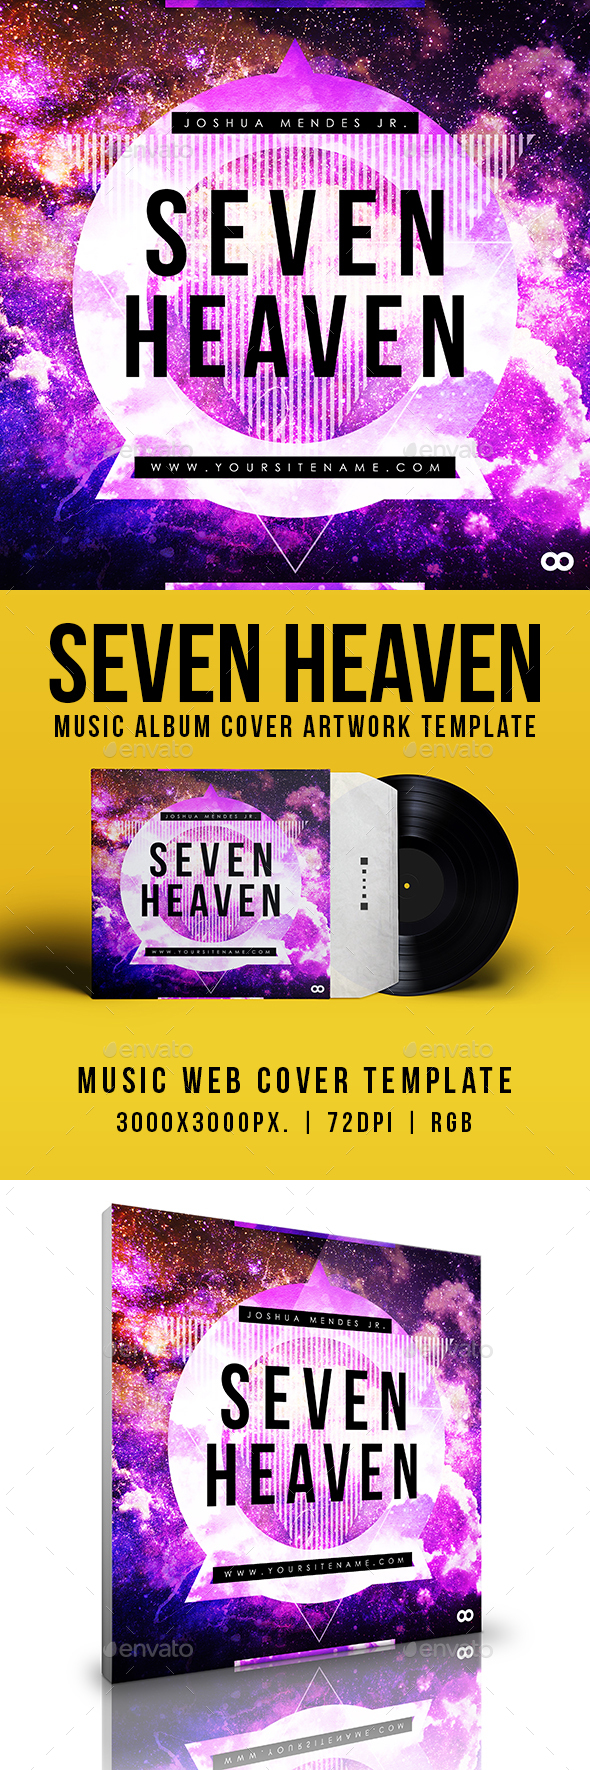 [DOWNLOAD]Seven Heaven - Music Album Cover Artwork Template